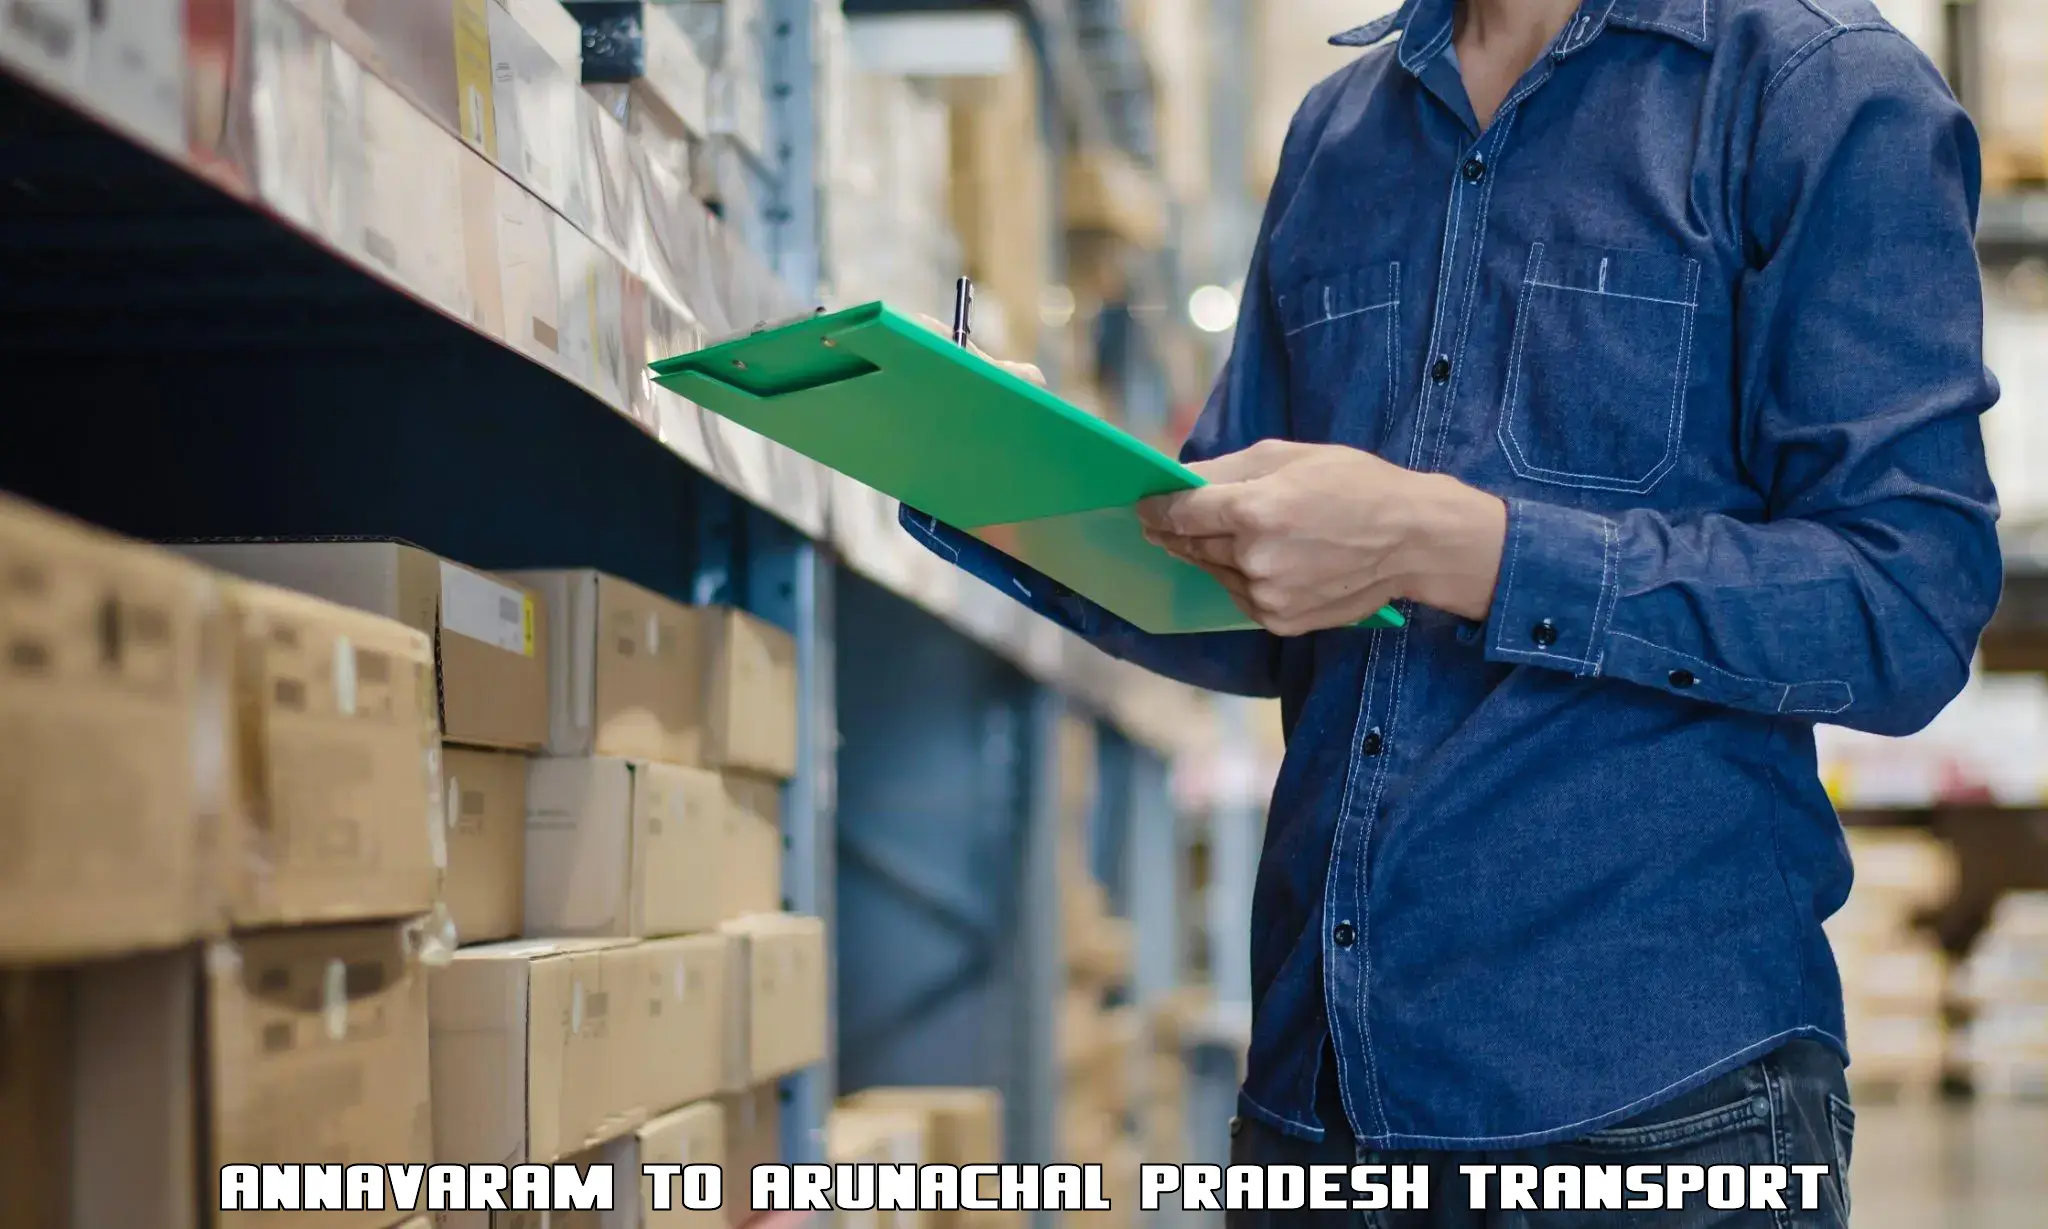 Container transport service Annavaram to Papum Pare